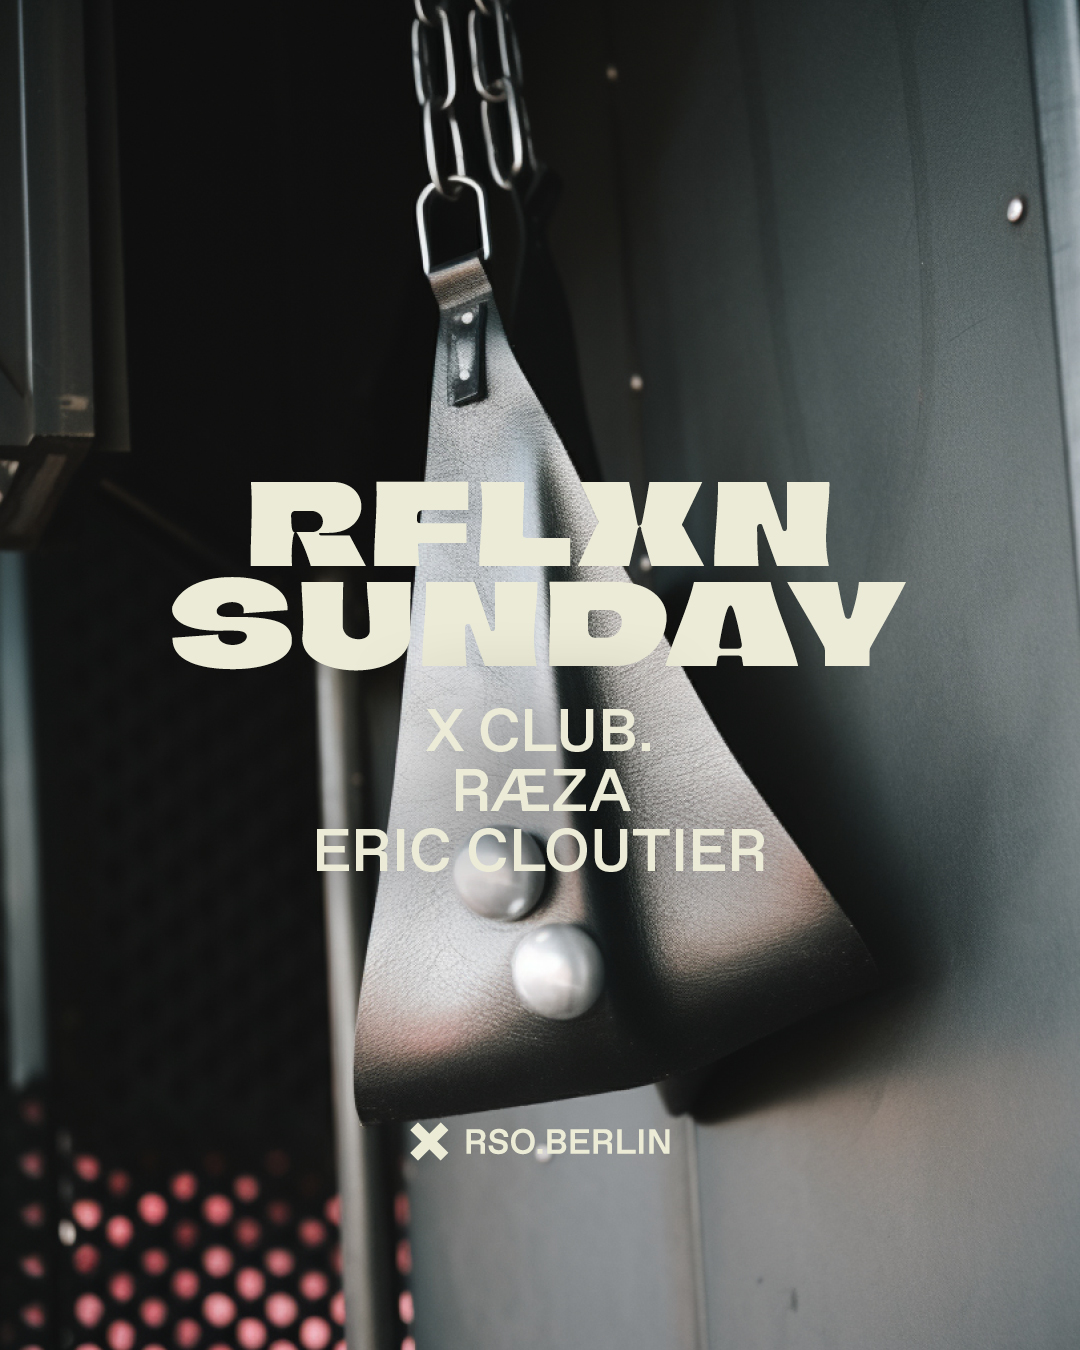 18.06.   RFLXN Sunday with X CLUB., RÆZA & Eric Cloutier